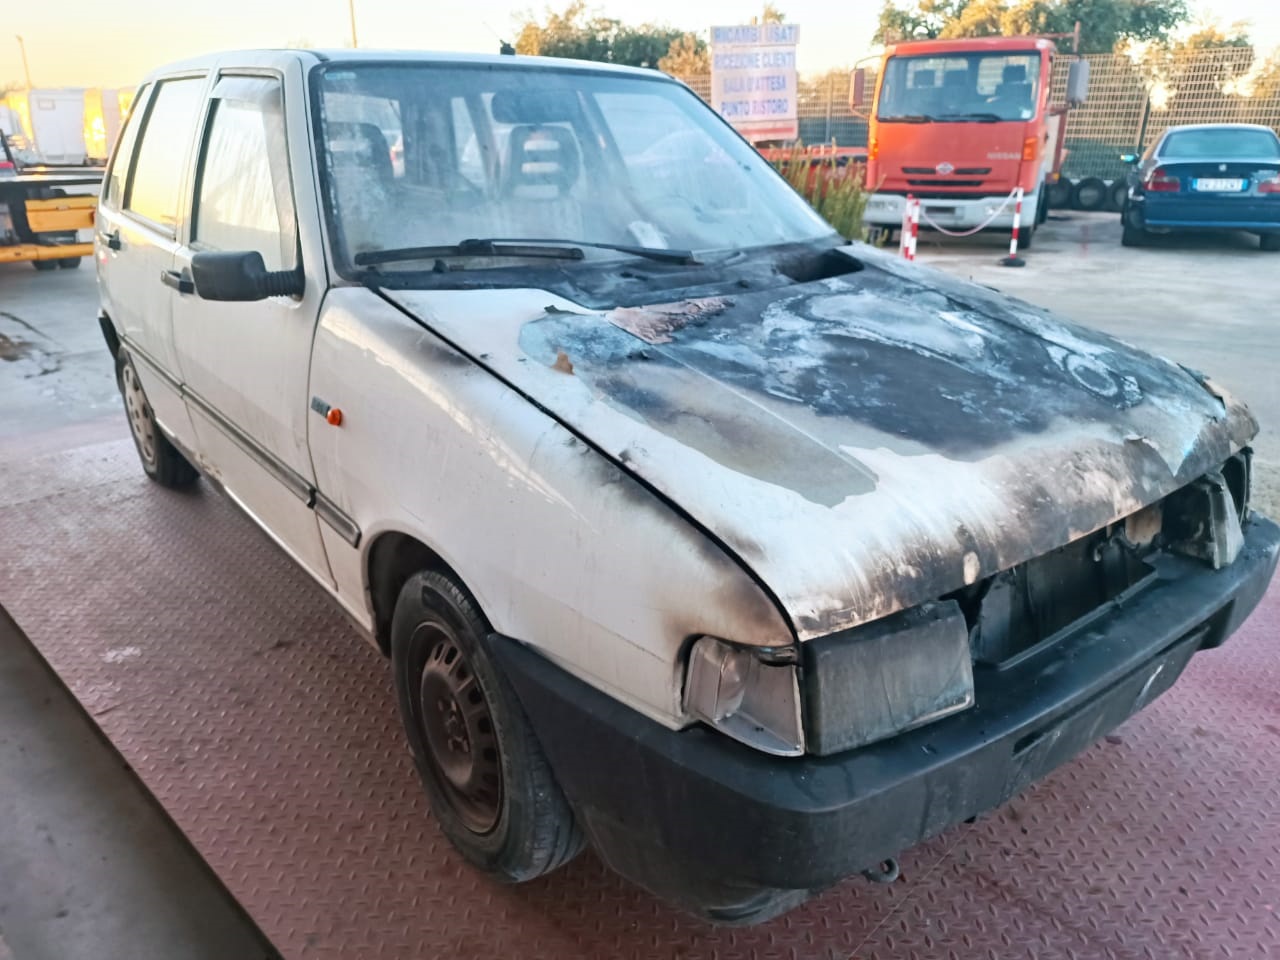 Al momento stai visualizzando Fiat Uno del 1992 disponibile nel nostro autoparco di demolizione per la vendita dei ricambi usati. Info solo telefonando al 348 5846422. Universal Car di Nicola Ladisa.